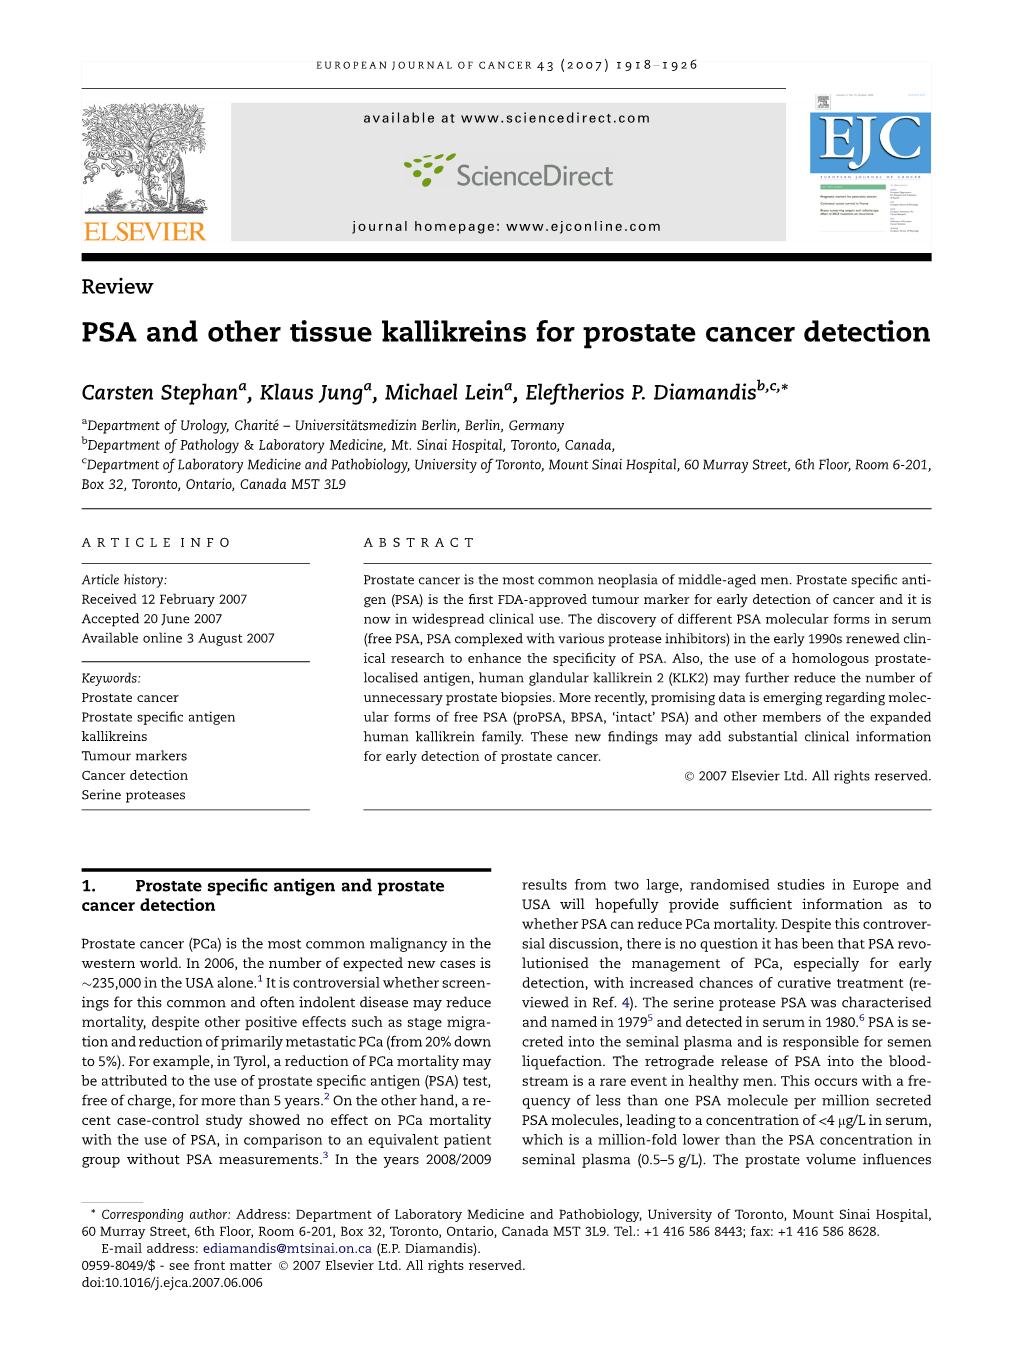 PSA and Other Tissue Kallikreins for Prostate Cancer Detection